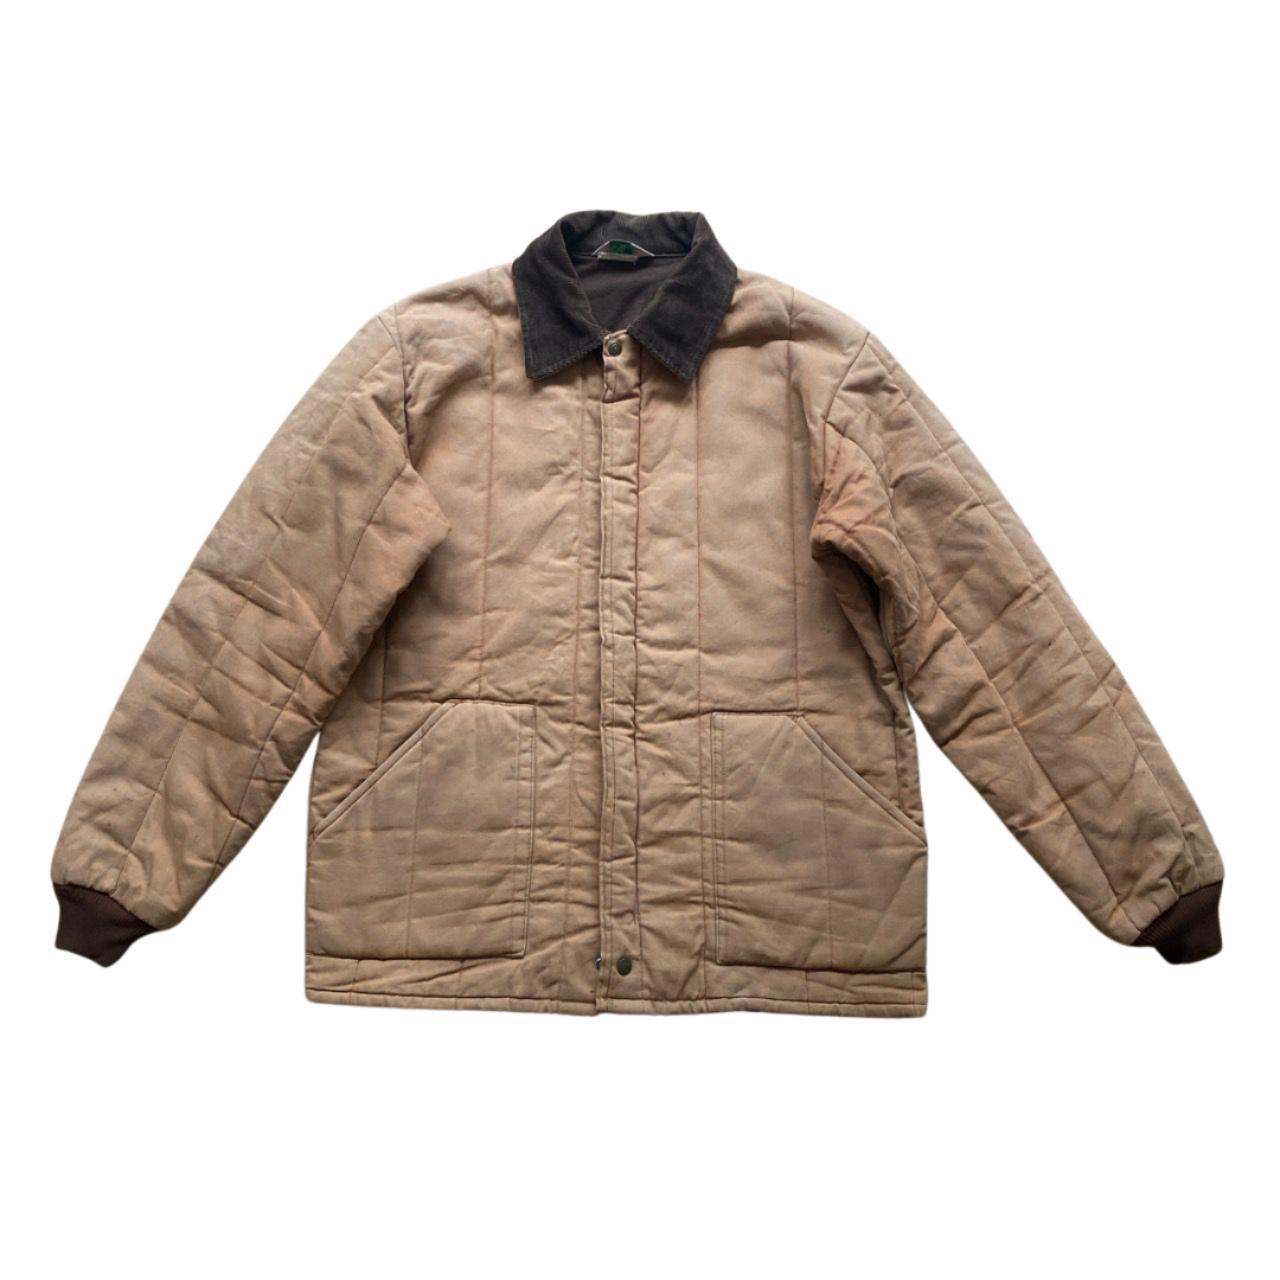 Amazing 00s Tan workwear jacket with soft,... - Depop